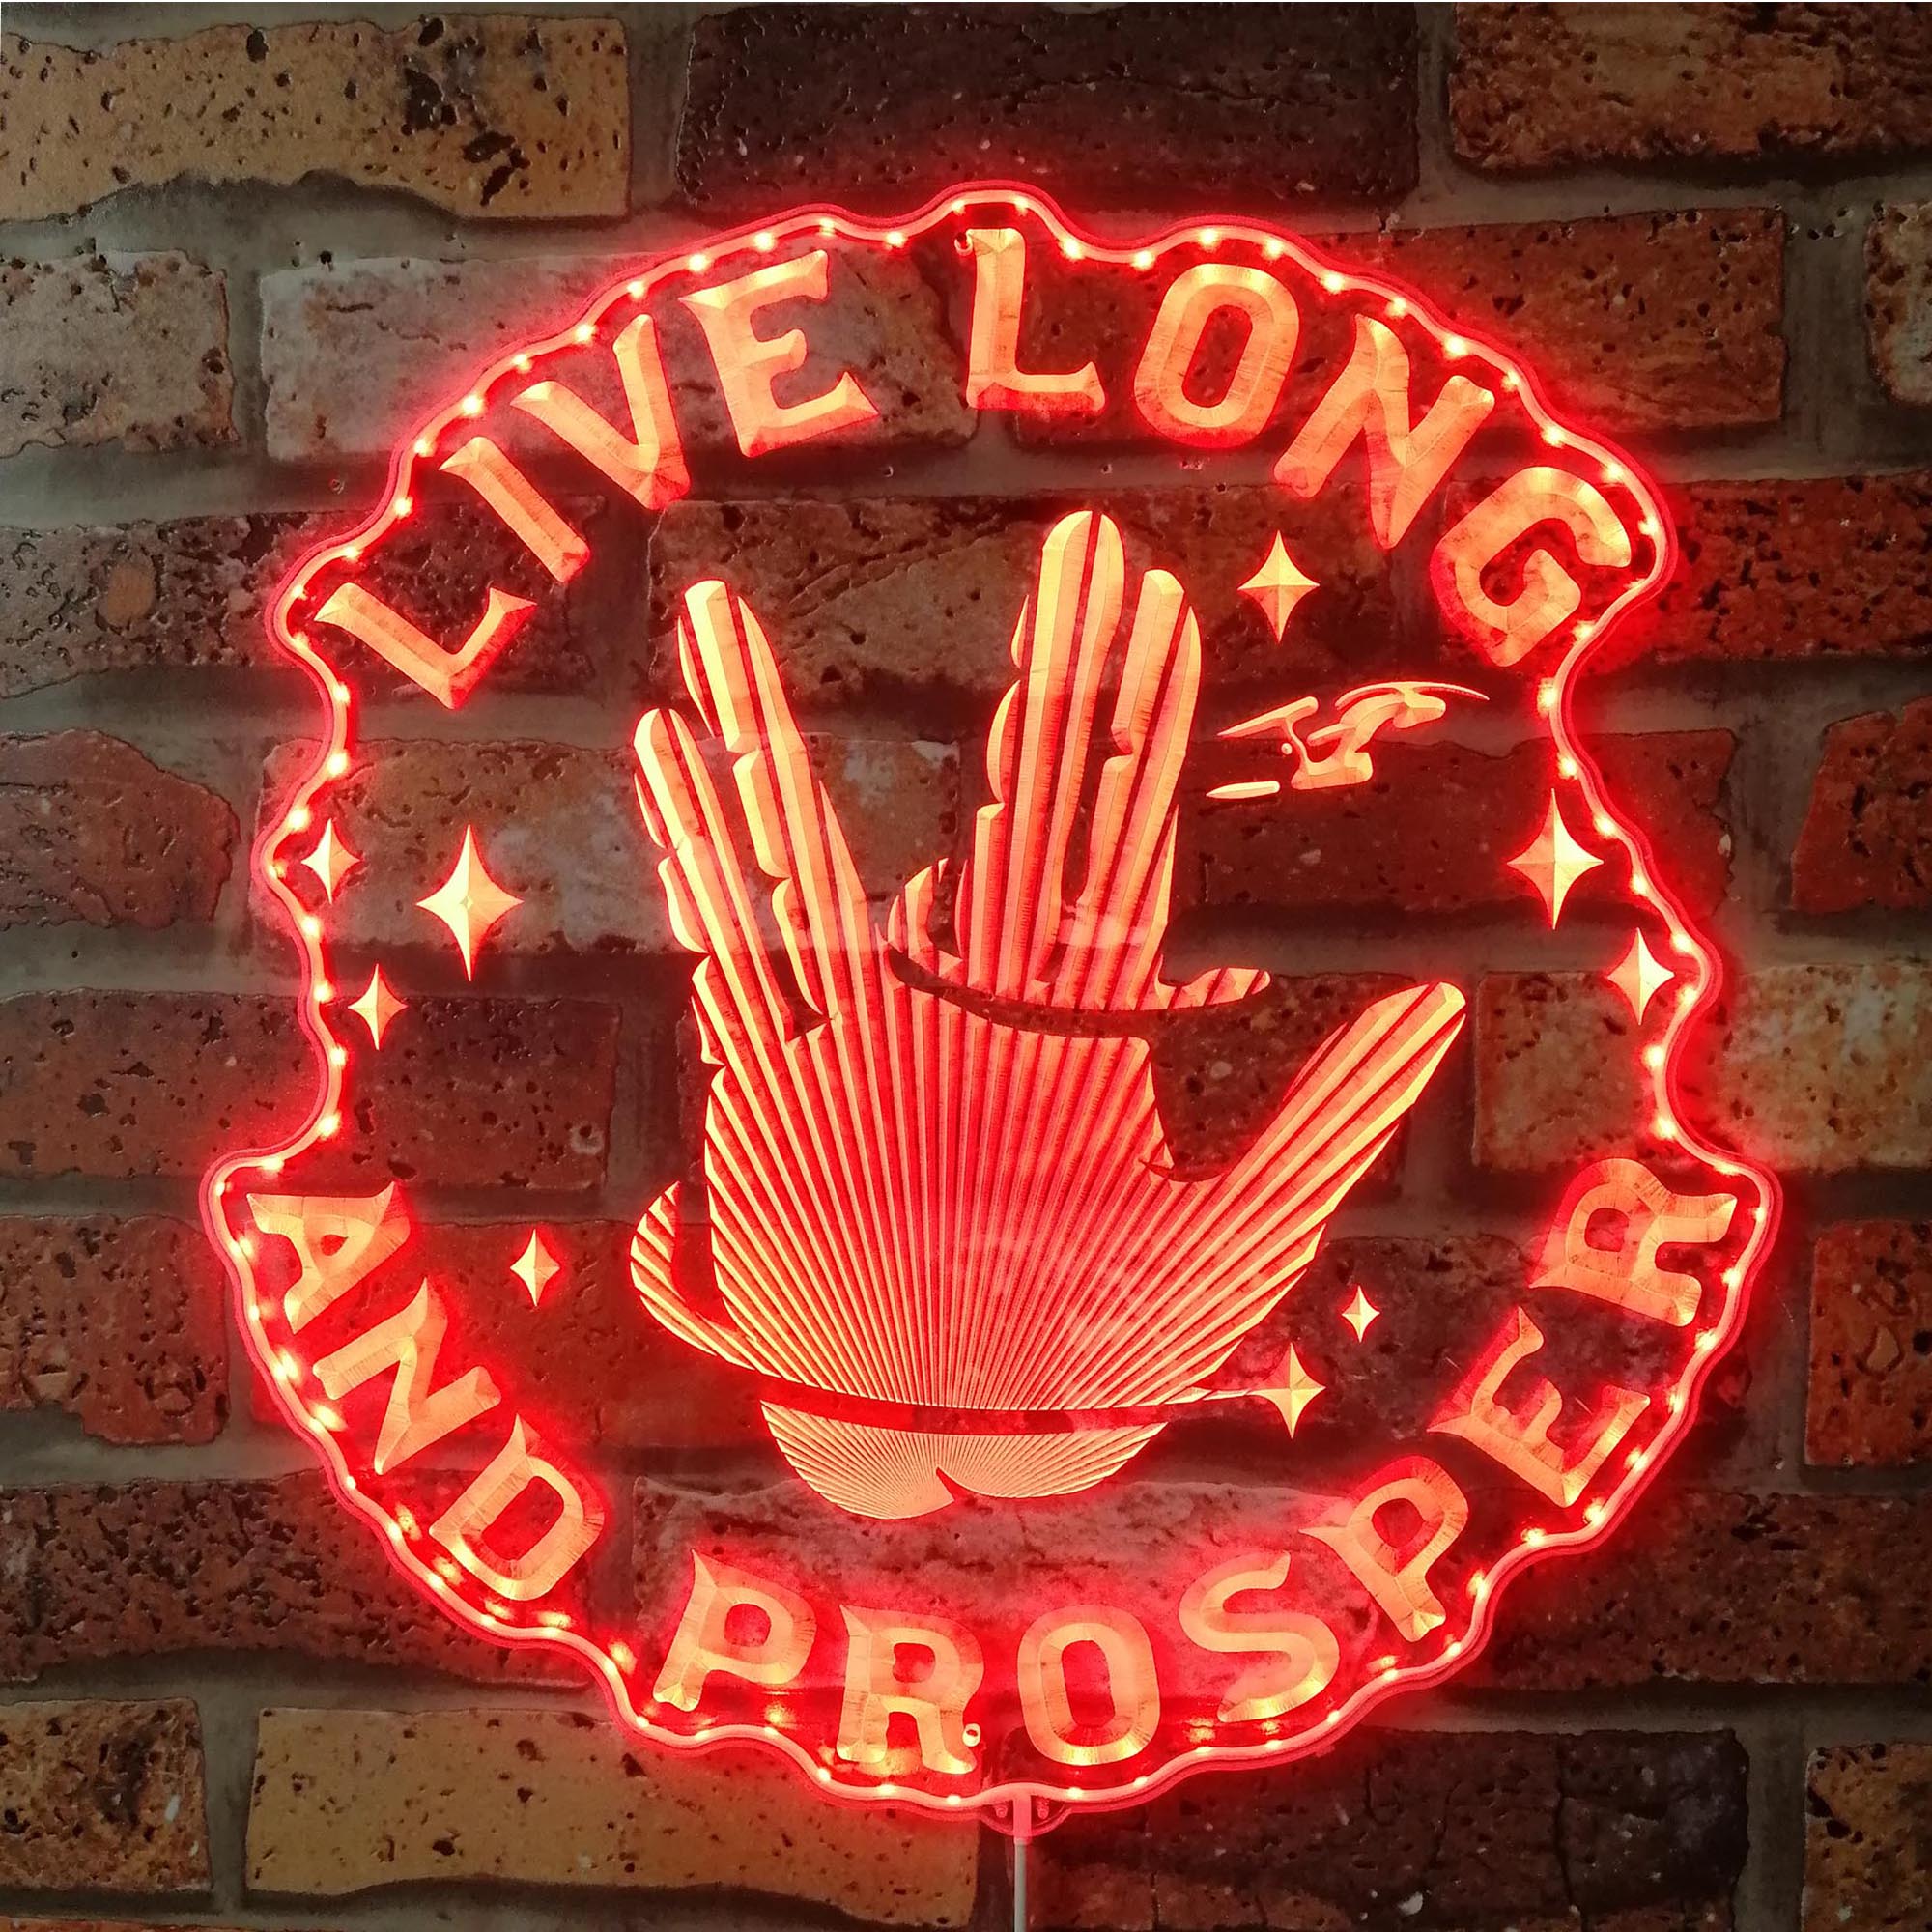 Star Trek Live Long and Prosper Neon RGB Edge Lit LED Sign